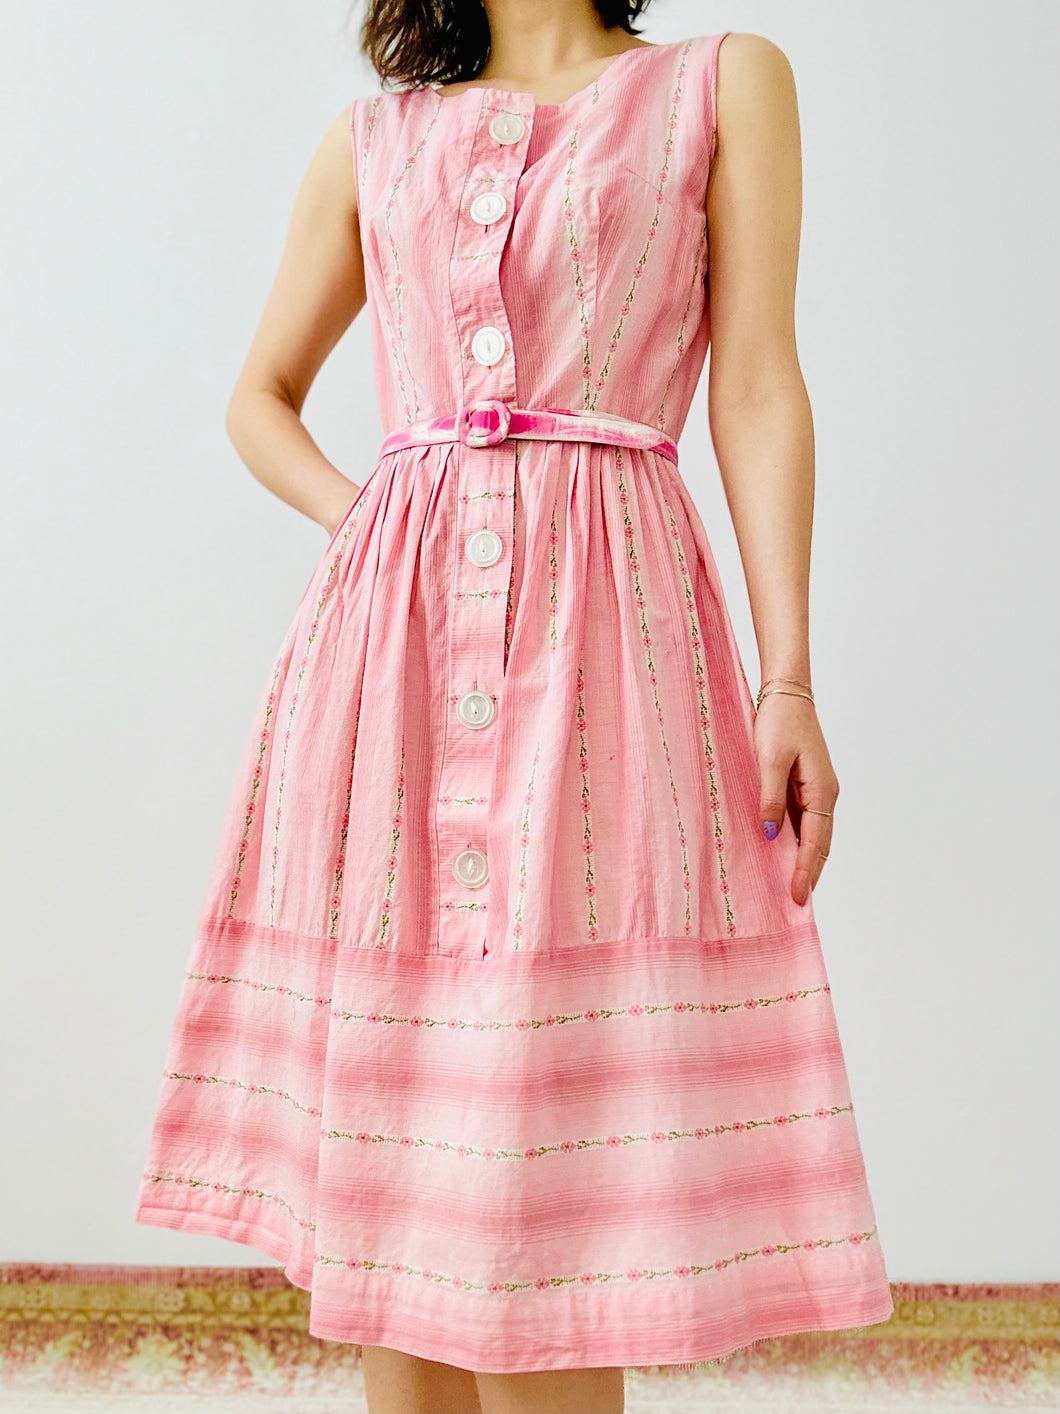 Vintage 1950s pink floral dress